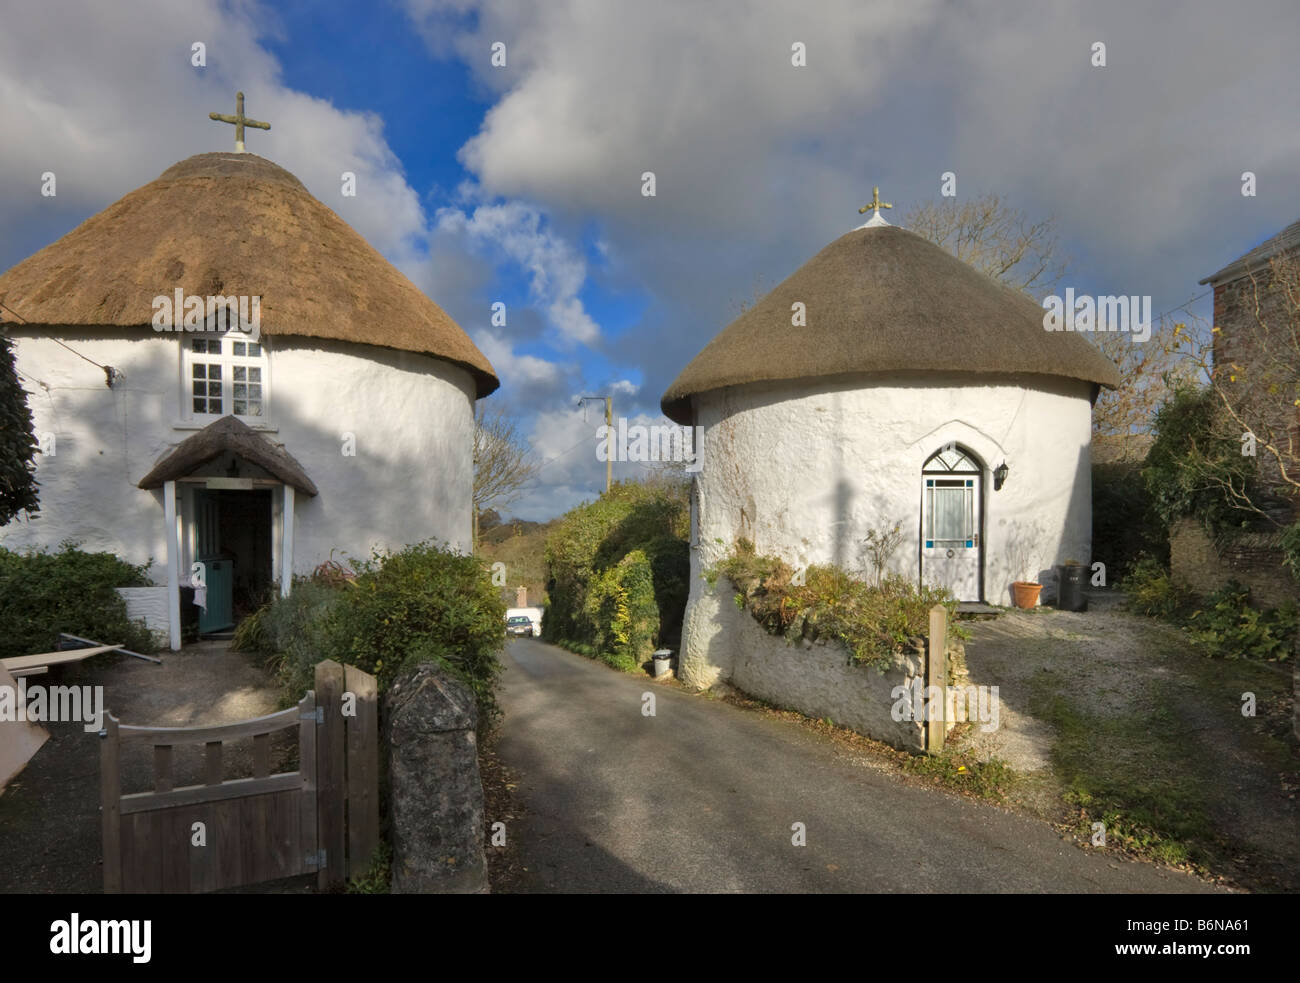 Round houses, Veryan, Roseland, Cornwall Stock Photo